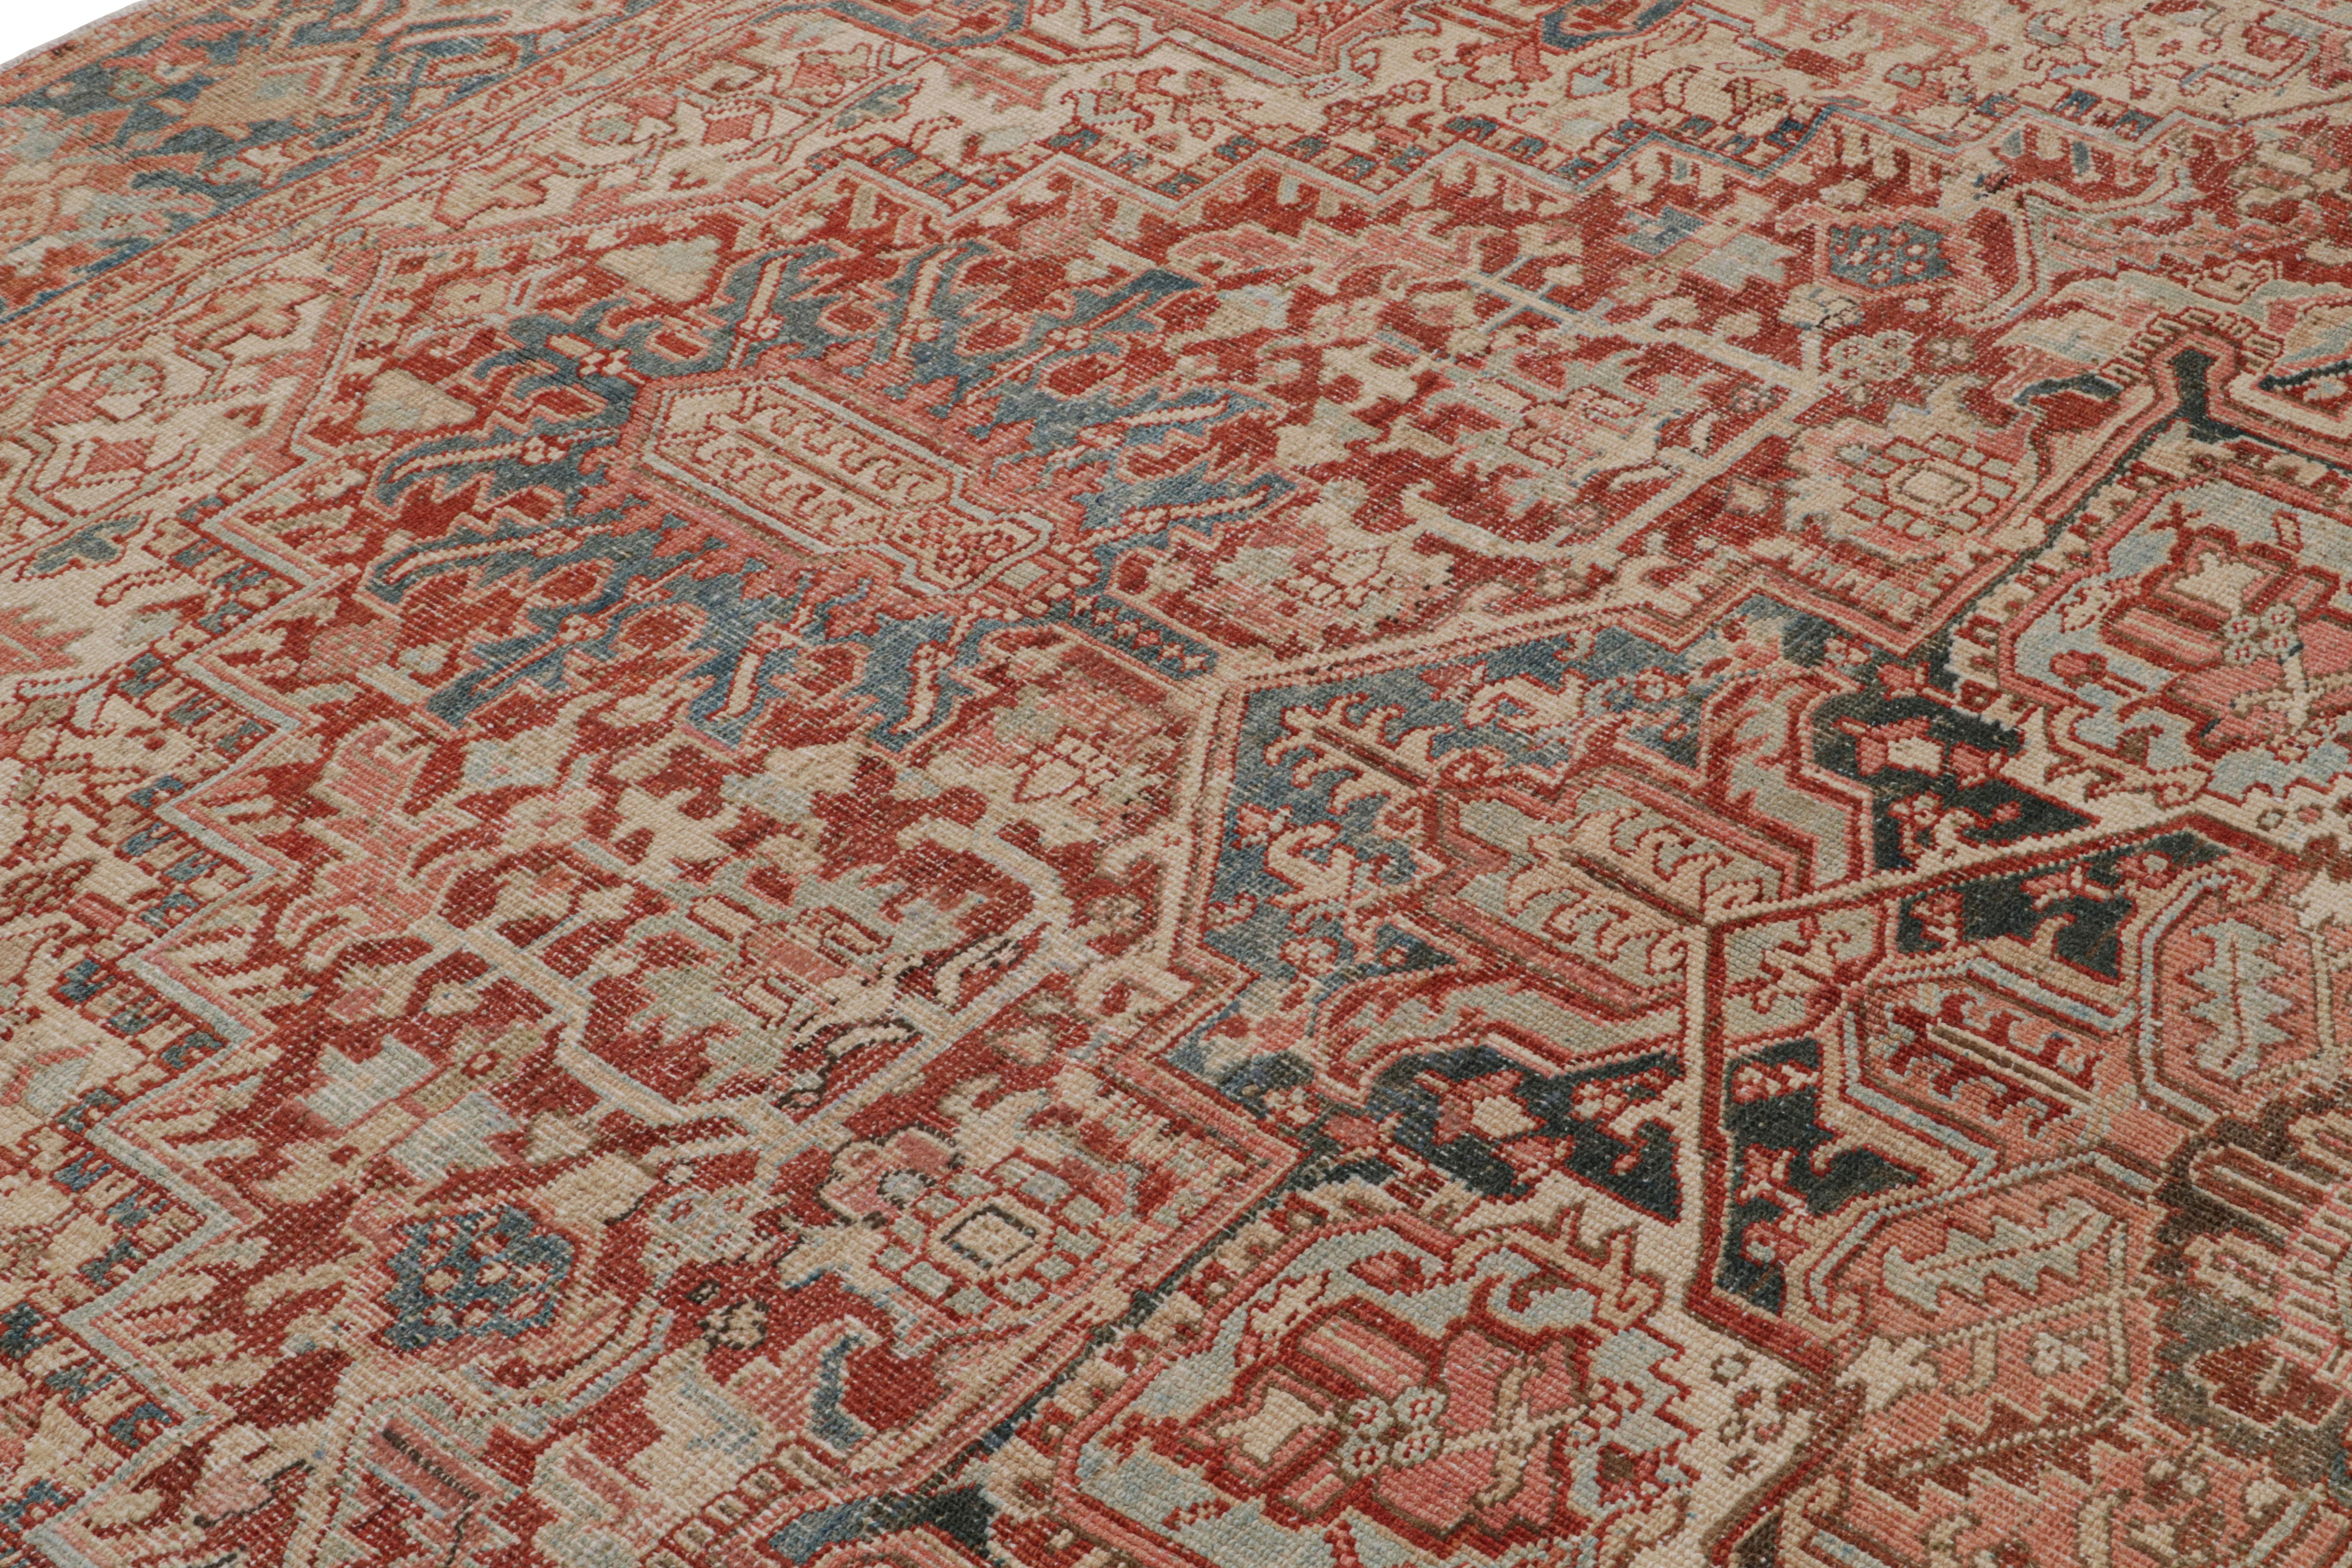 Handgeknüpft aus Wolle um 1950-1960, zeigt dieser 9x11 große persische Heriz-Teppich eine aufwendige Reihe von geometrisch-floralen Mustern, die sich um ein Rosetten-Medaillon im Feld gruppieren - eine schöne Zeichnung für diesen Stil.  

Über das